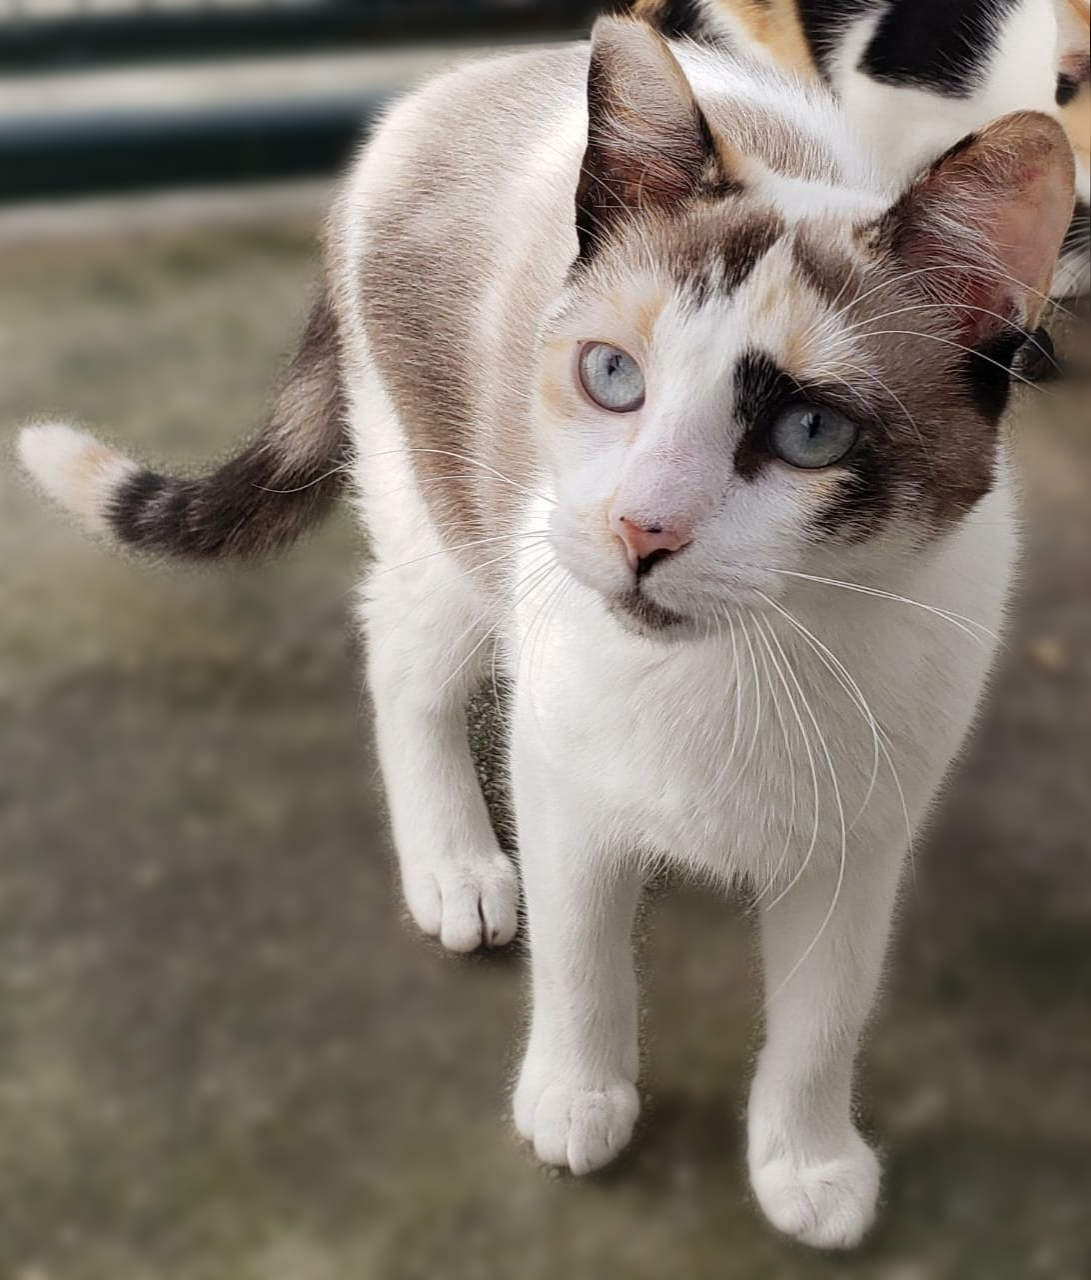 #PraCegoVer: Fotografia da gata Verona. Ela é branca e tem os olhos azuis.